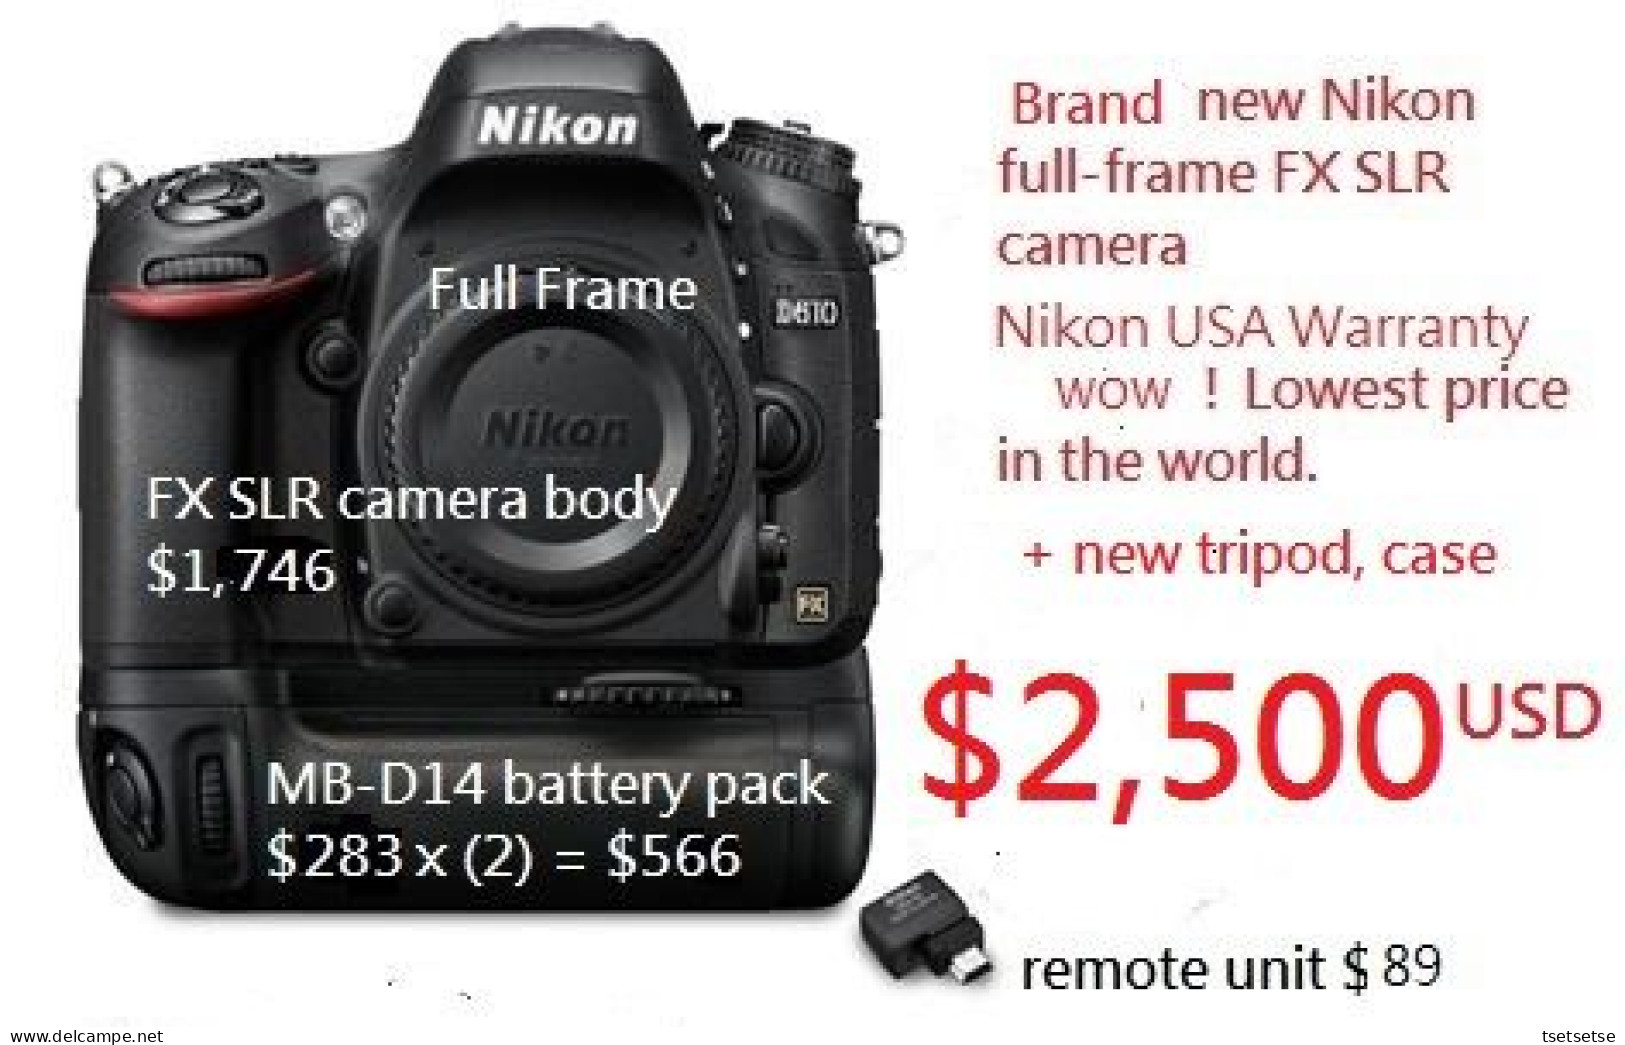 Your Choice $2,032 Or $1,099? "Brand NEW" Nikon Full-frame FX D610 DSLR Camera Kit - Cámaras Fotográficas